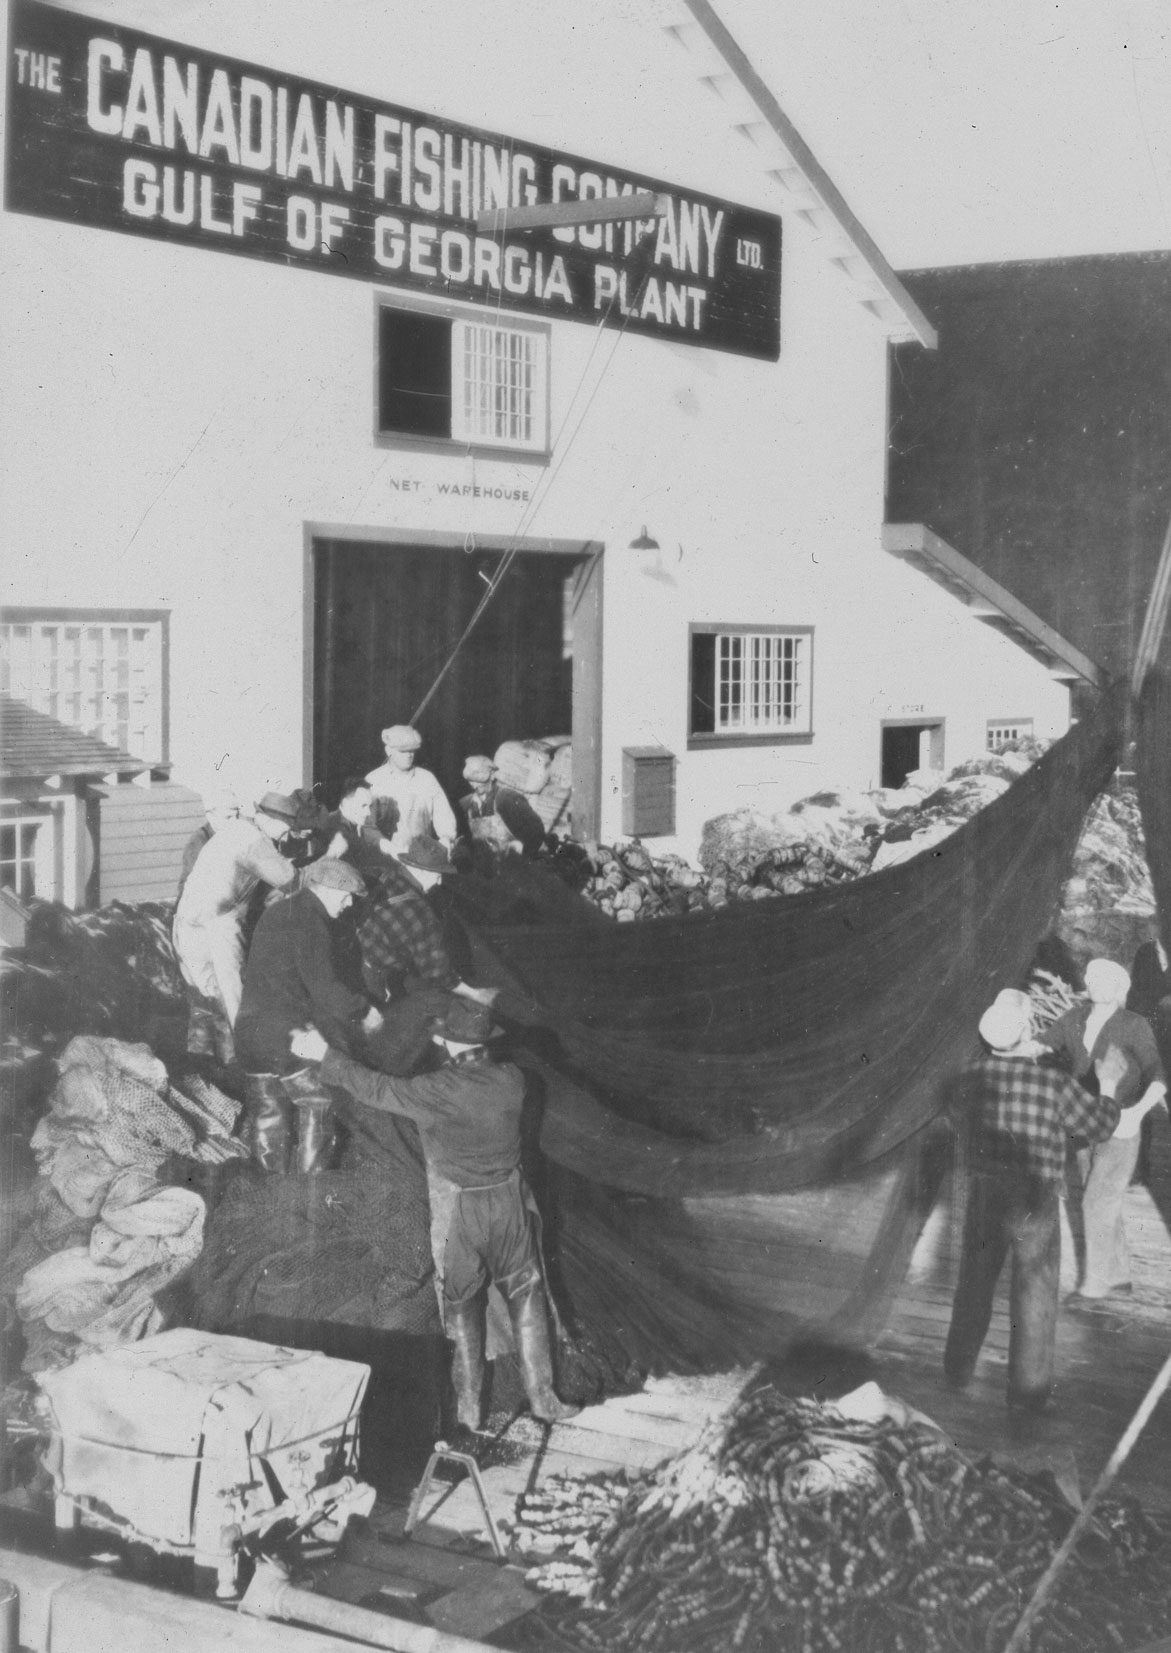 Plusieurs hommes sont rassemblés autour d'un filet. On peut lire sur une enseigne du bâtiment : « The Canadian Fishing Company Ltd. Gulf of Georgia Plant ».